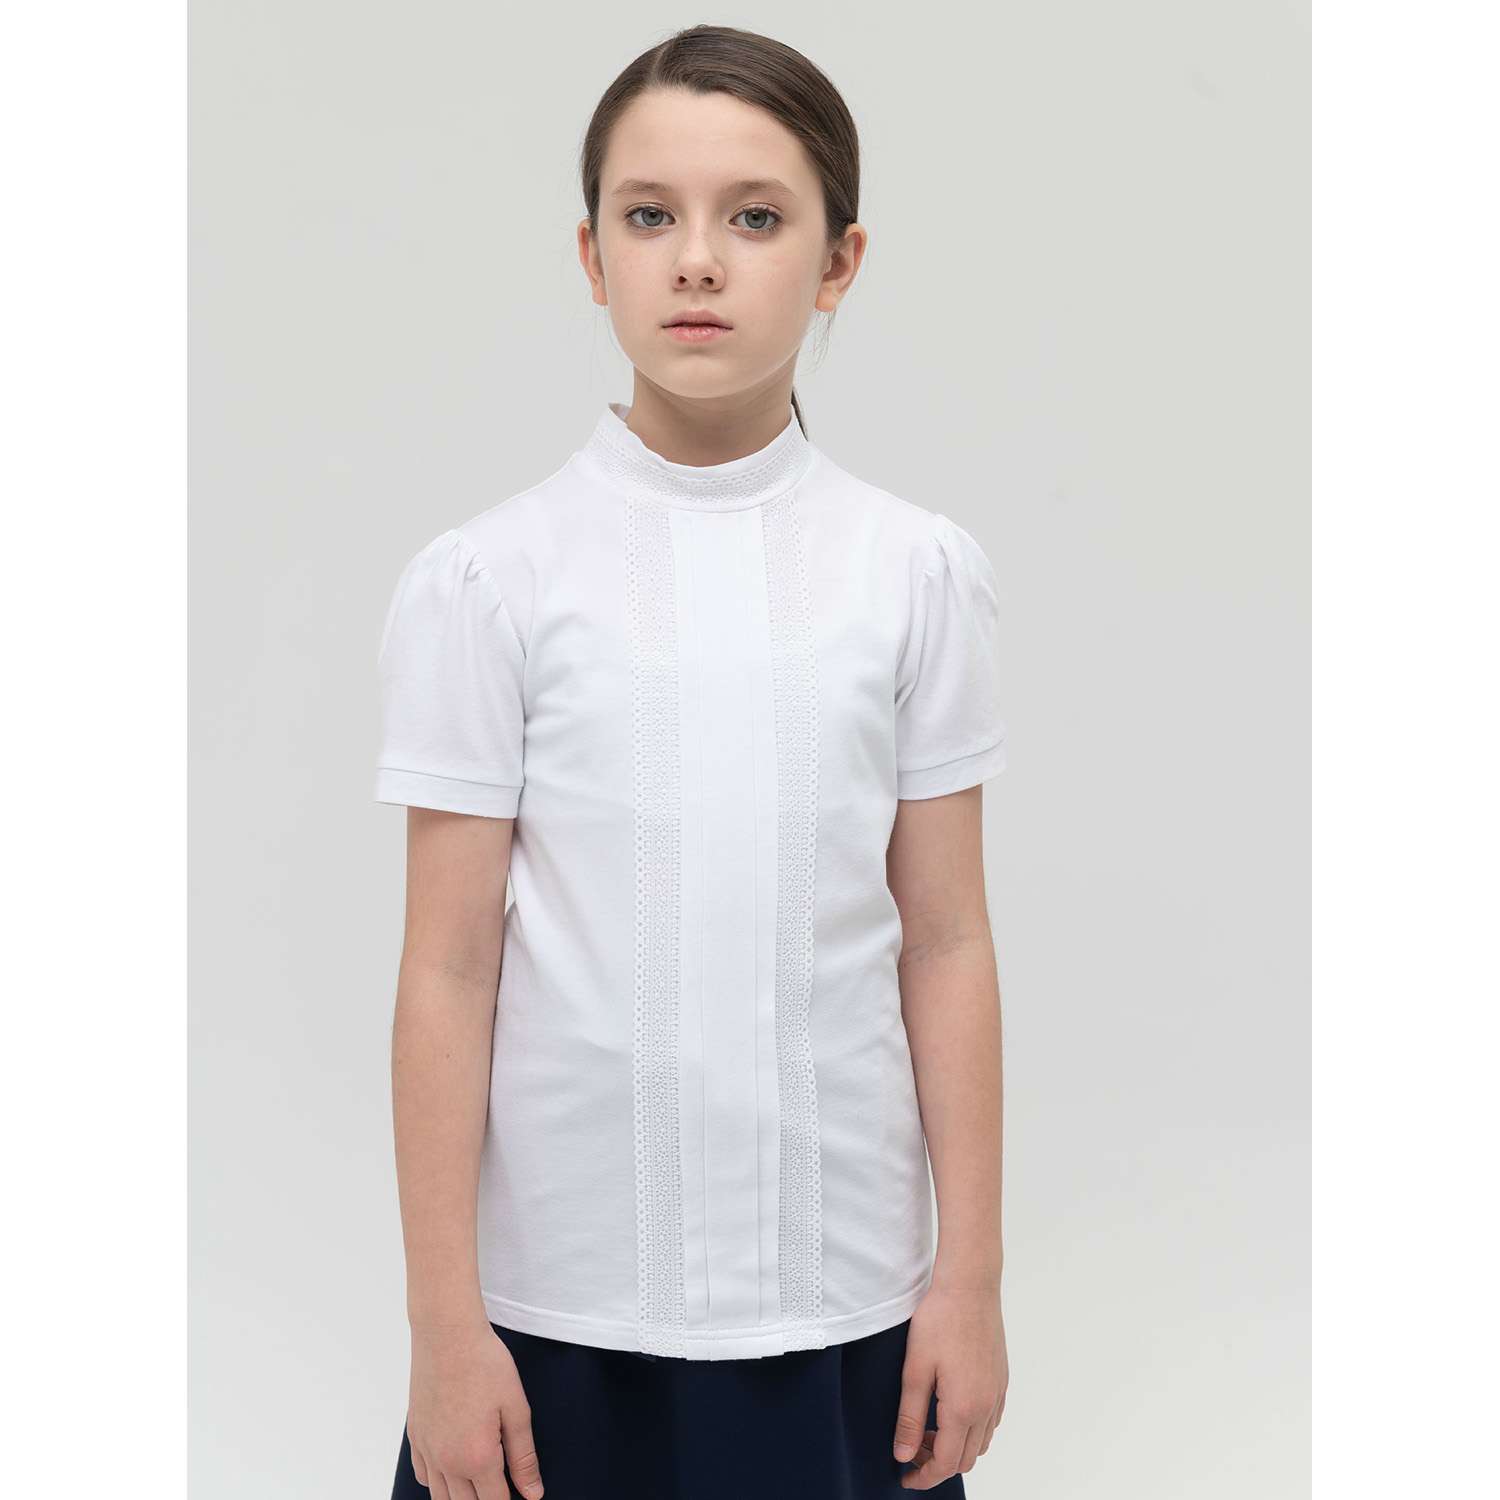 Блузка PELICAN GFTS8139/Белый(2) - фото 1